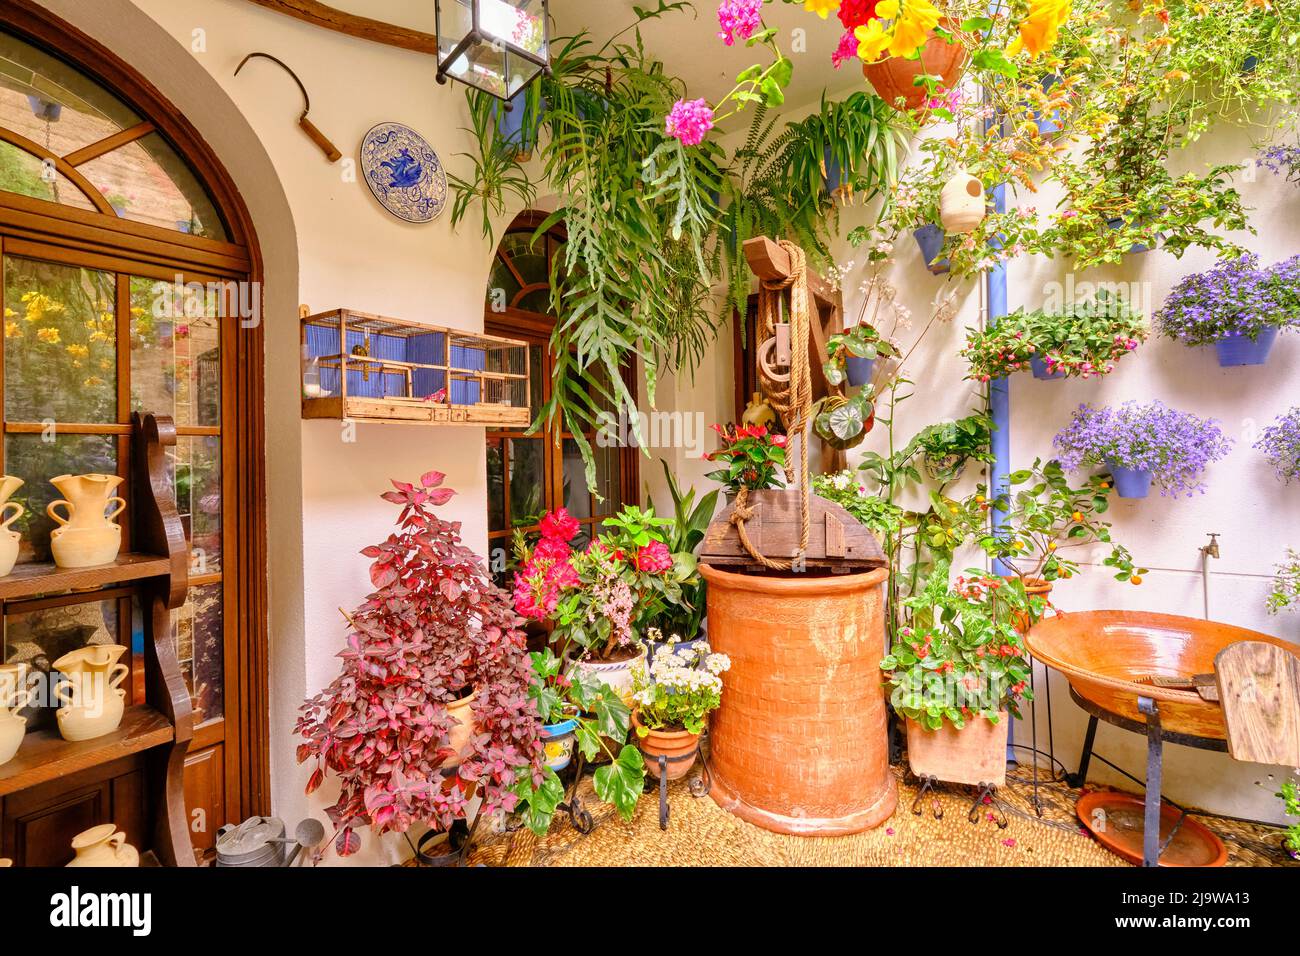 Un patio traditionnel de Cordoue, une cour pleine de fleurs et de fraîcheur. San Basilio, Andalousie, Espagne Banque D'Images